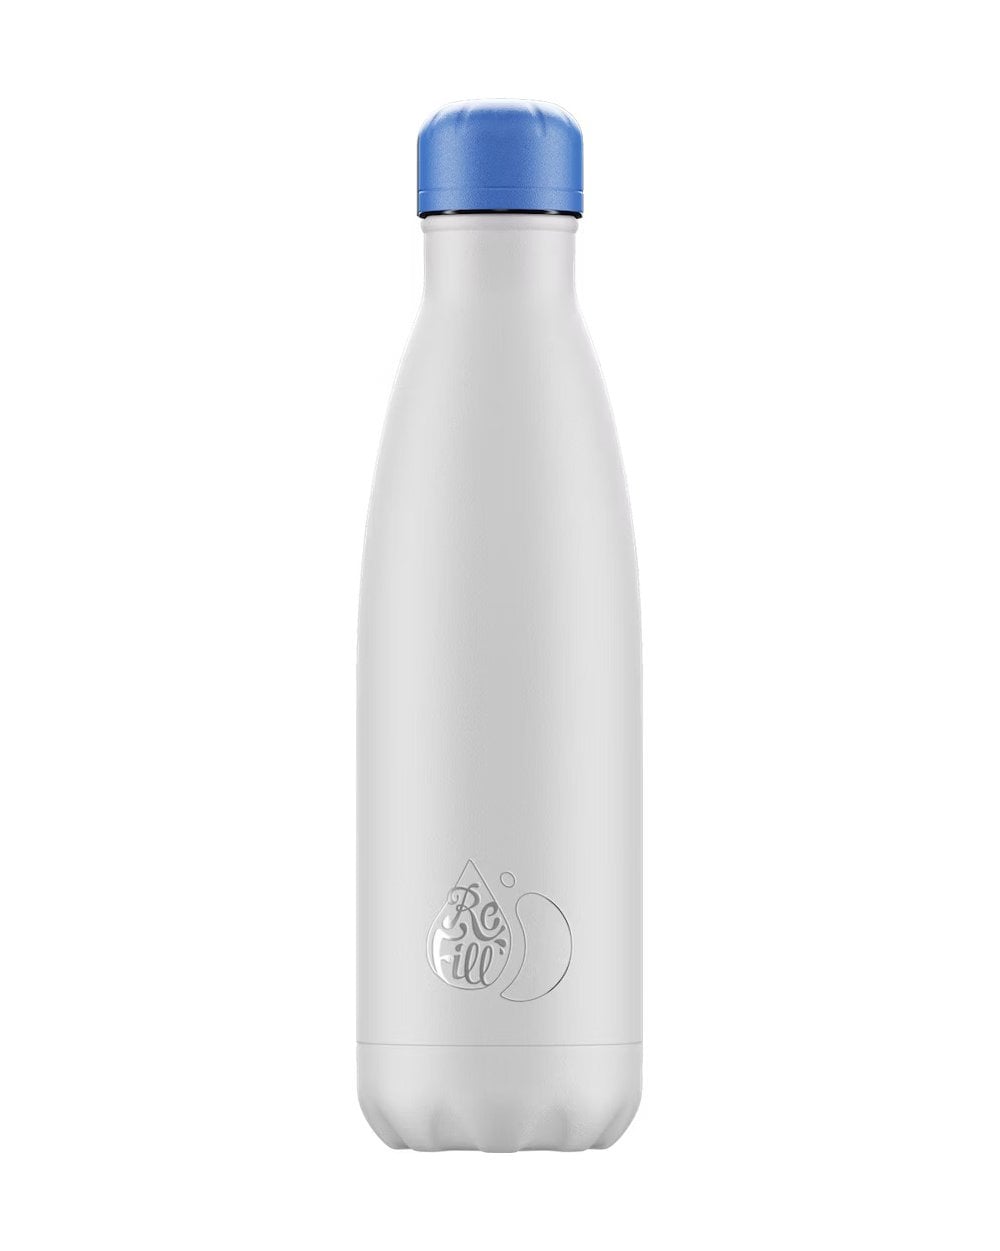 Refill White 500ml Bottle